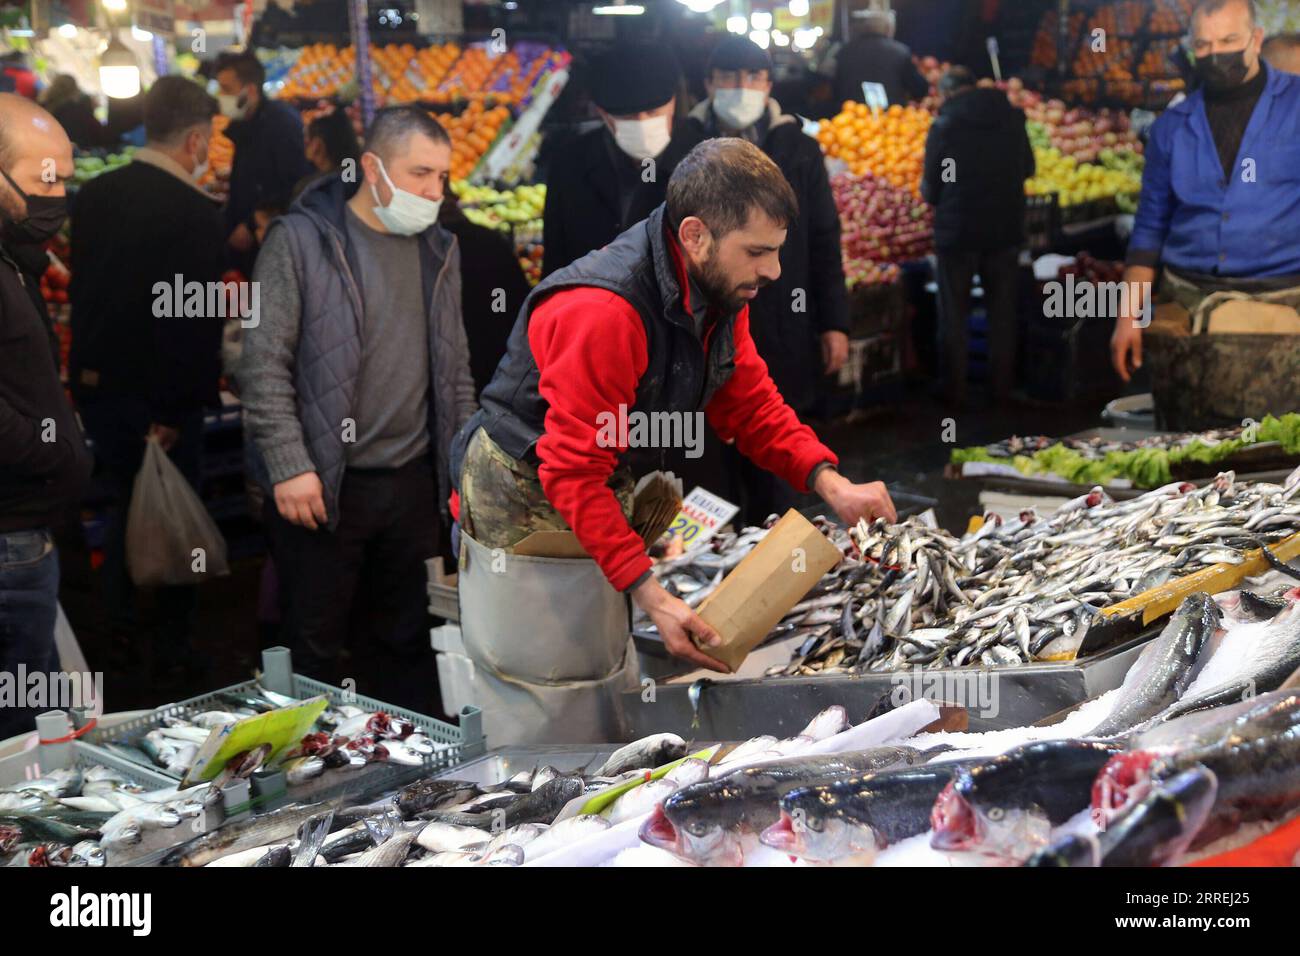 220303 -- ANKARA, le 3 mars 2022 -- Un vendeur de poisson est vu dans un marché à Ankara, en Turquie, le 3 mars 2022. La Turquie a assoupli plusieurs restrictions COVID-19 dans les espaces publics alors que le pays est entré dans une nouvelle phase de la lutte contre la pandémie, a déclaré mercredi le ministre turc de la Santé, Fahrettin Koca. Photo de /Xinhua TURQUIE-ANKARA-COVID-19 RESTRICTIONS-ASSOUPLISSEMENT MustafaxKaya PUBLICATIONxNOTxINxCHN Banque D'Images